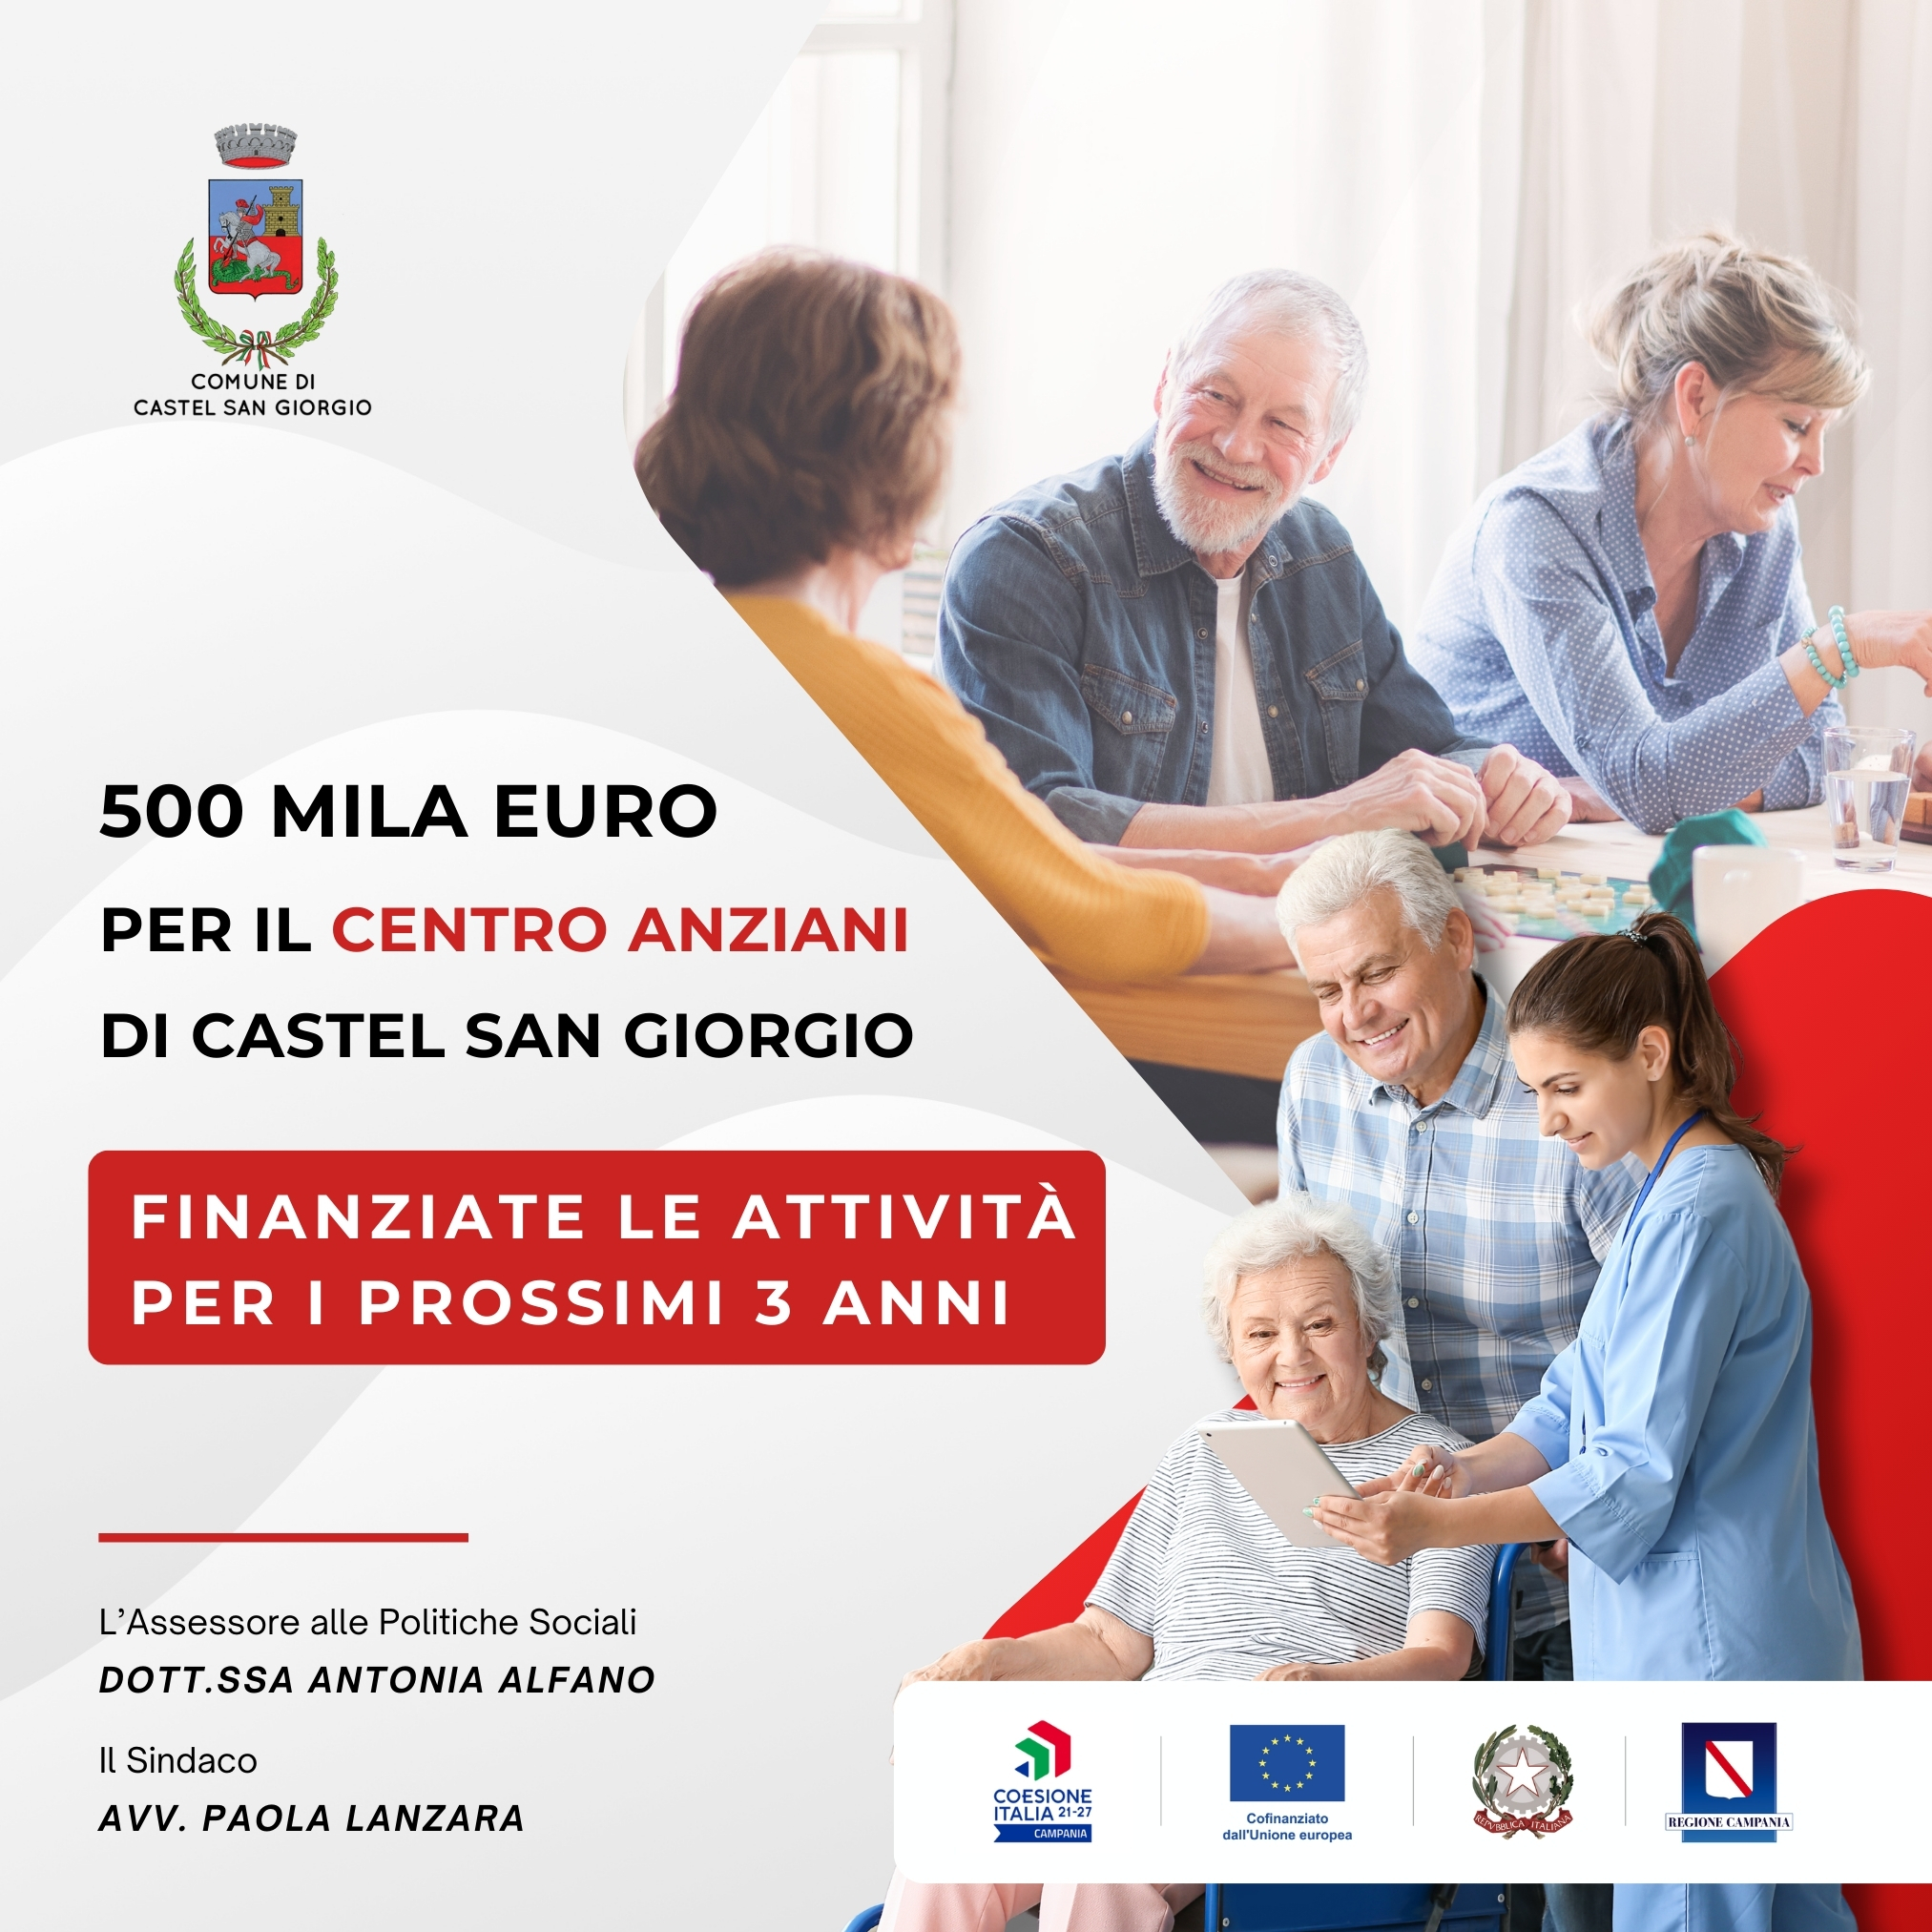 Castel San Giorgio: 500.000€ per Centro anziani  